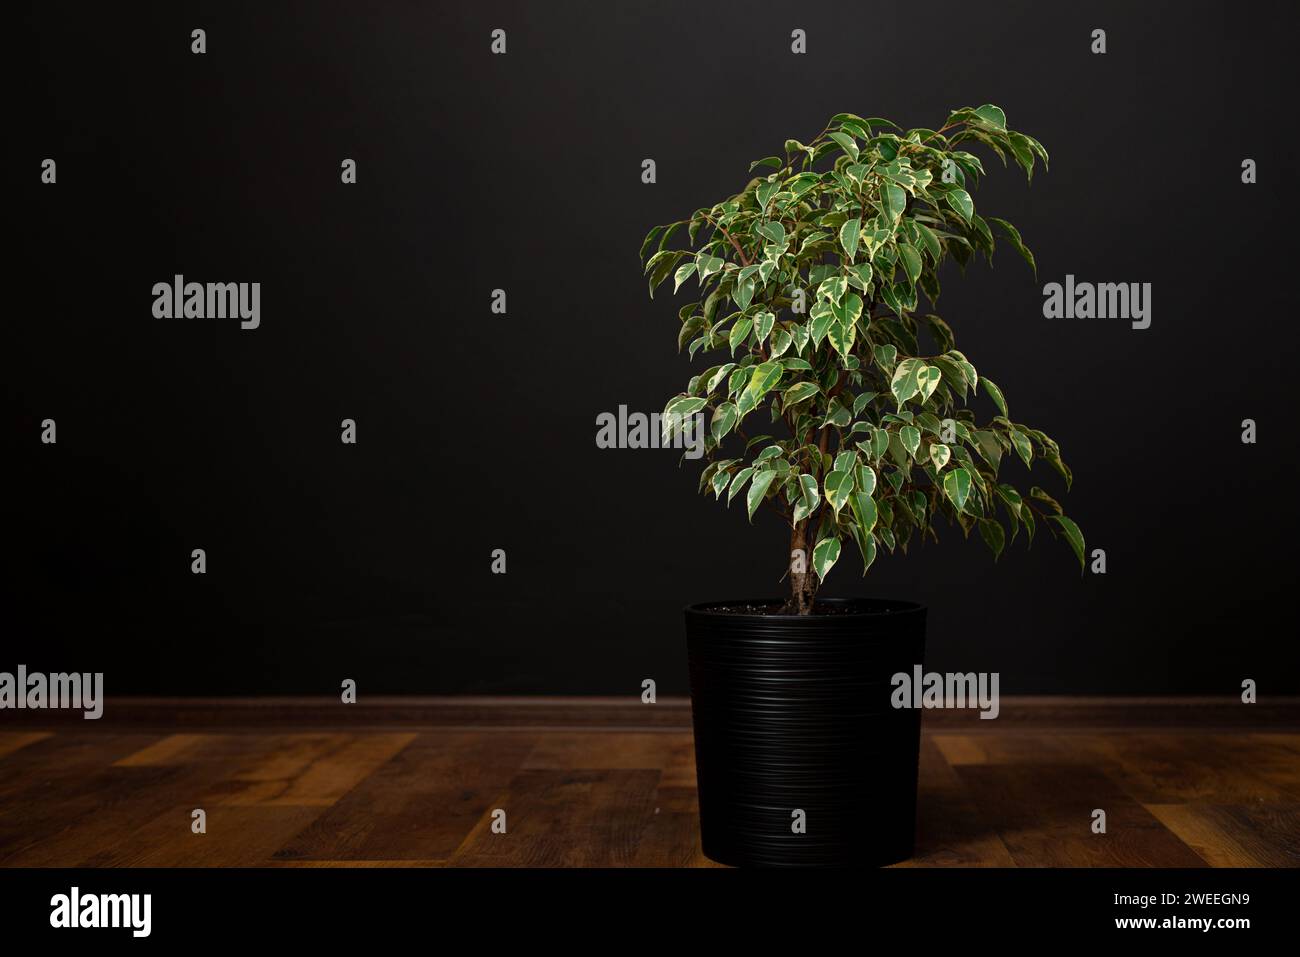 Schöne üppige Zimmerpflanze Ficus benjamina, allgemein bekannt als Trauerfeige, benjamin-Feige oder Ficus-Baum wächst in modernen Wohnräumen. Stockfoto